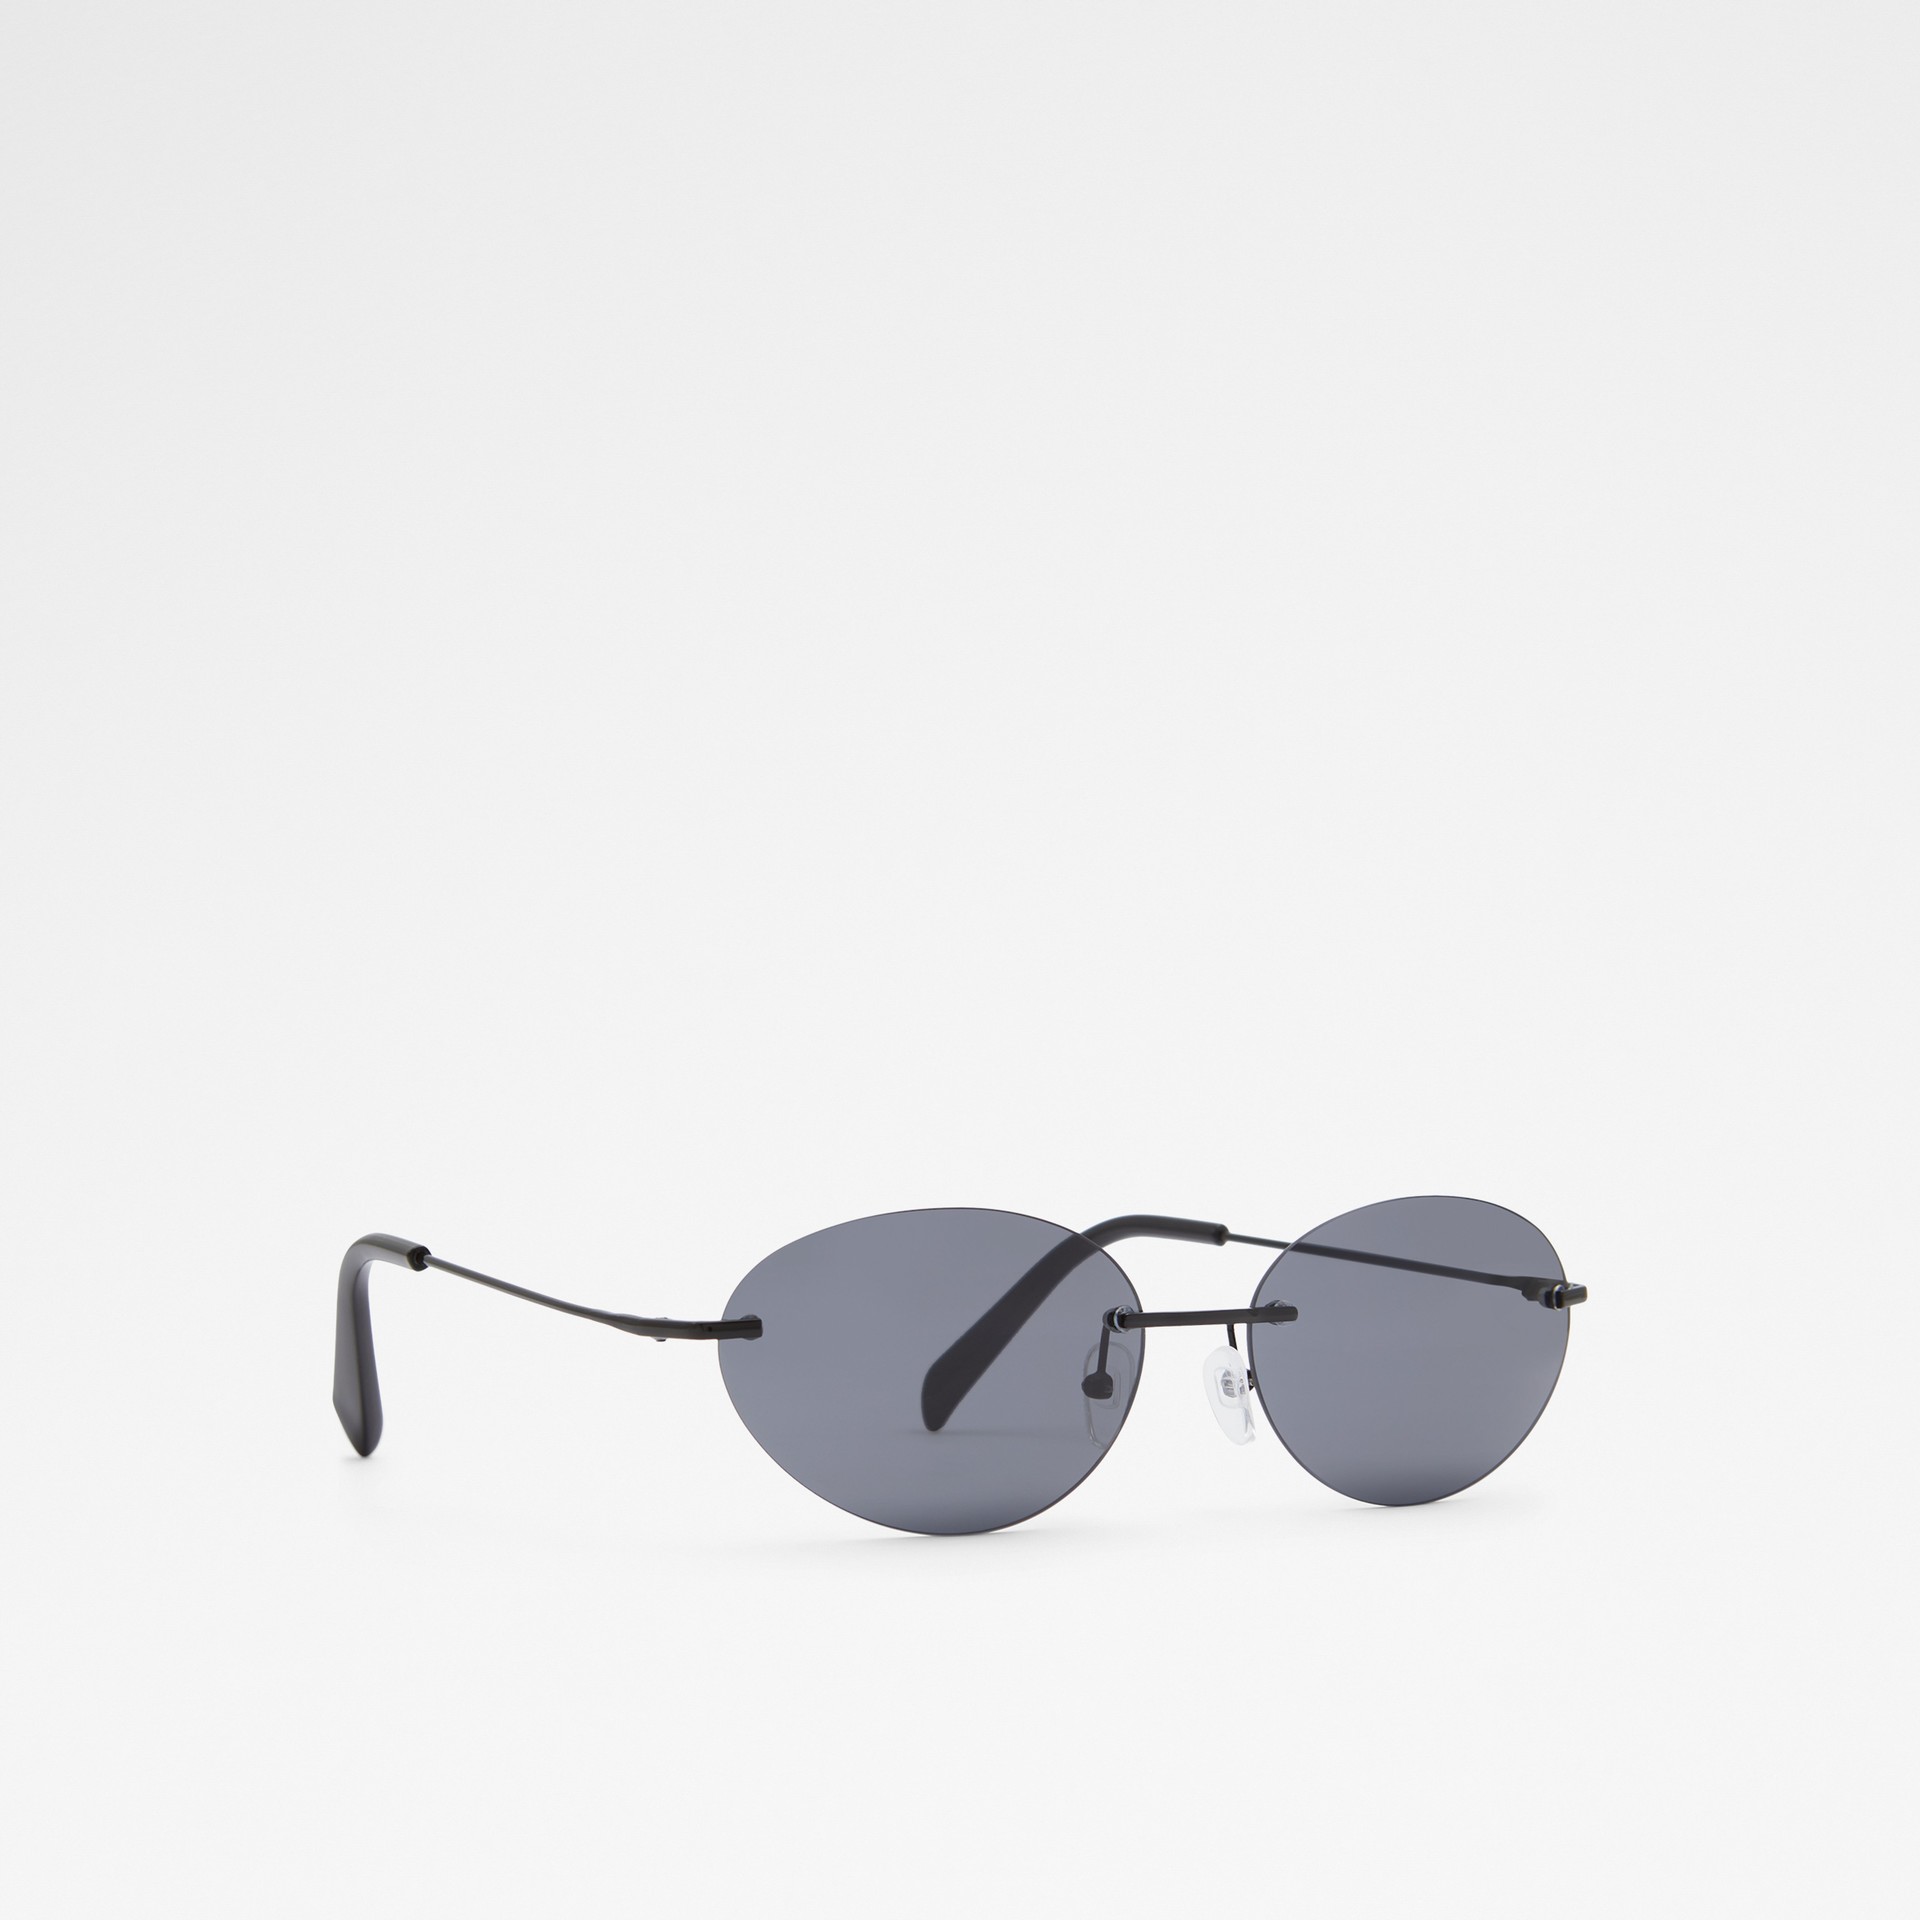 Gafas de sol para mujer - SEEN001